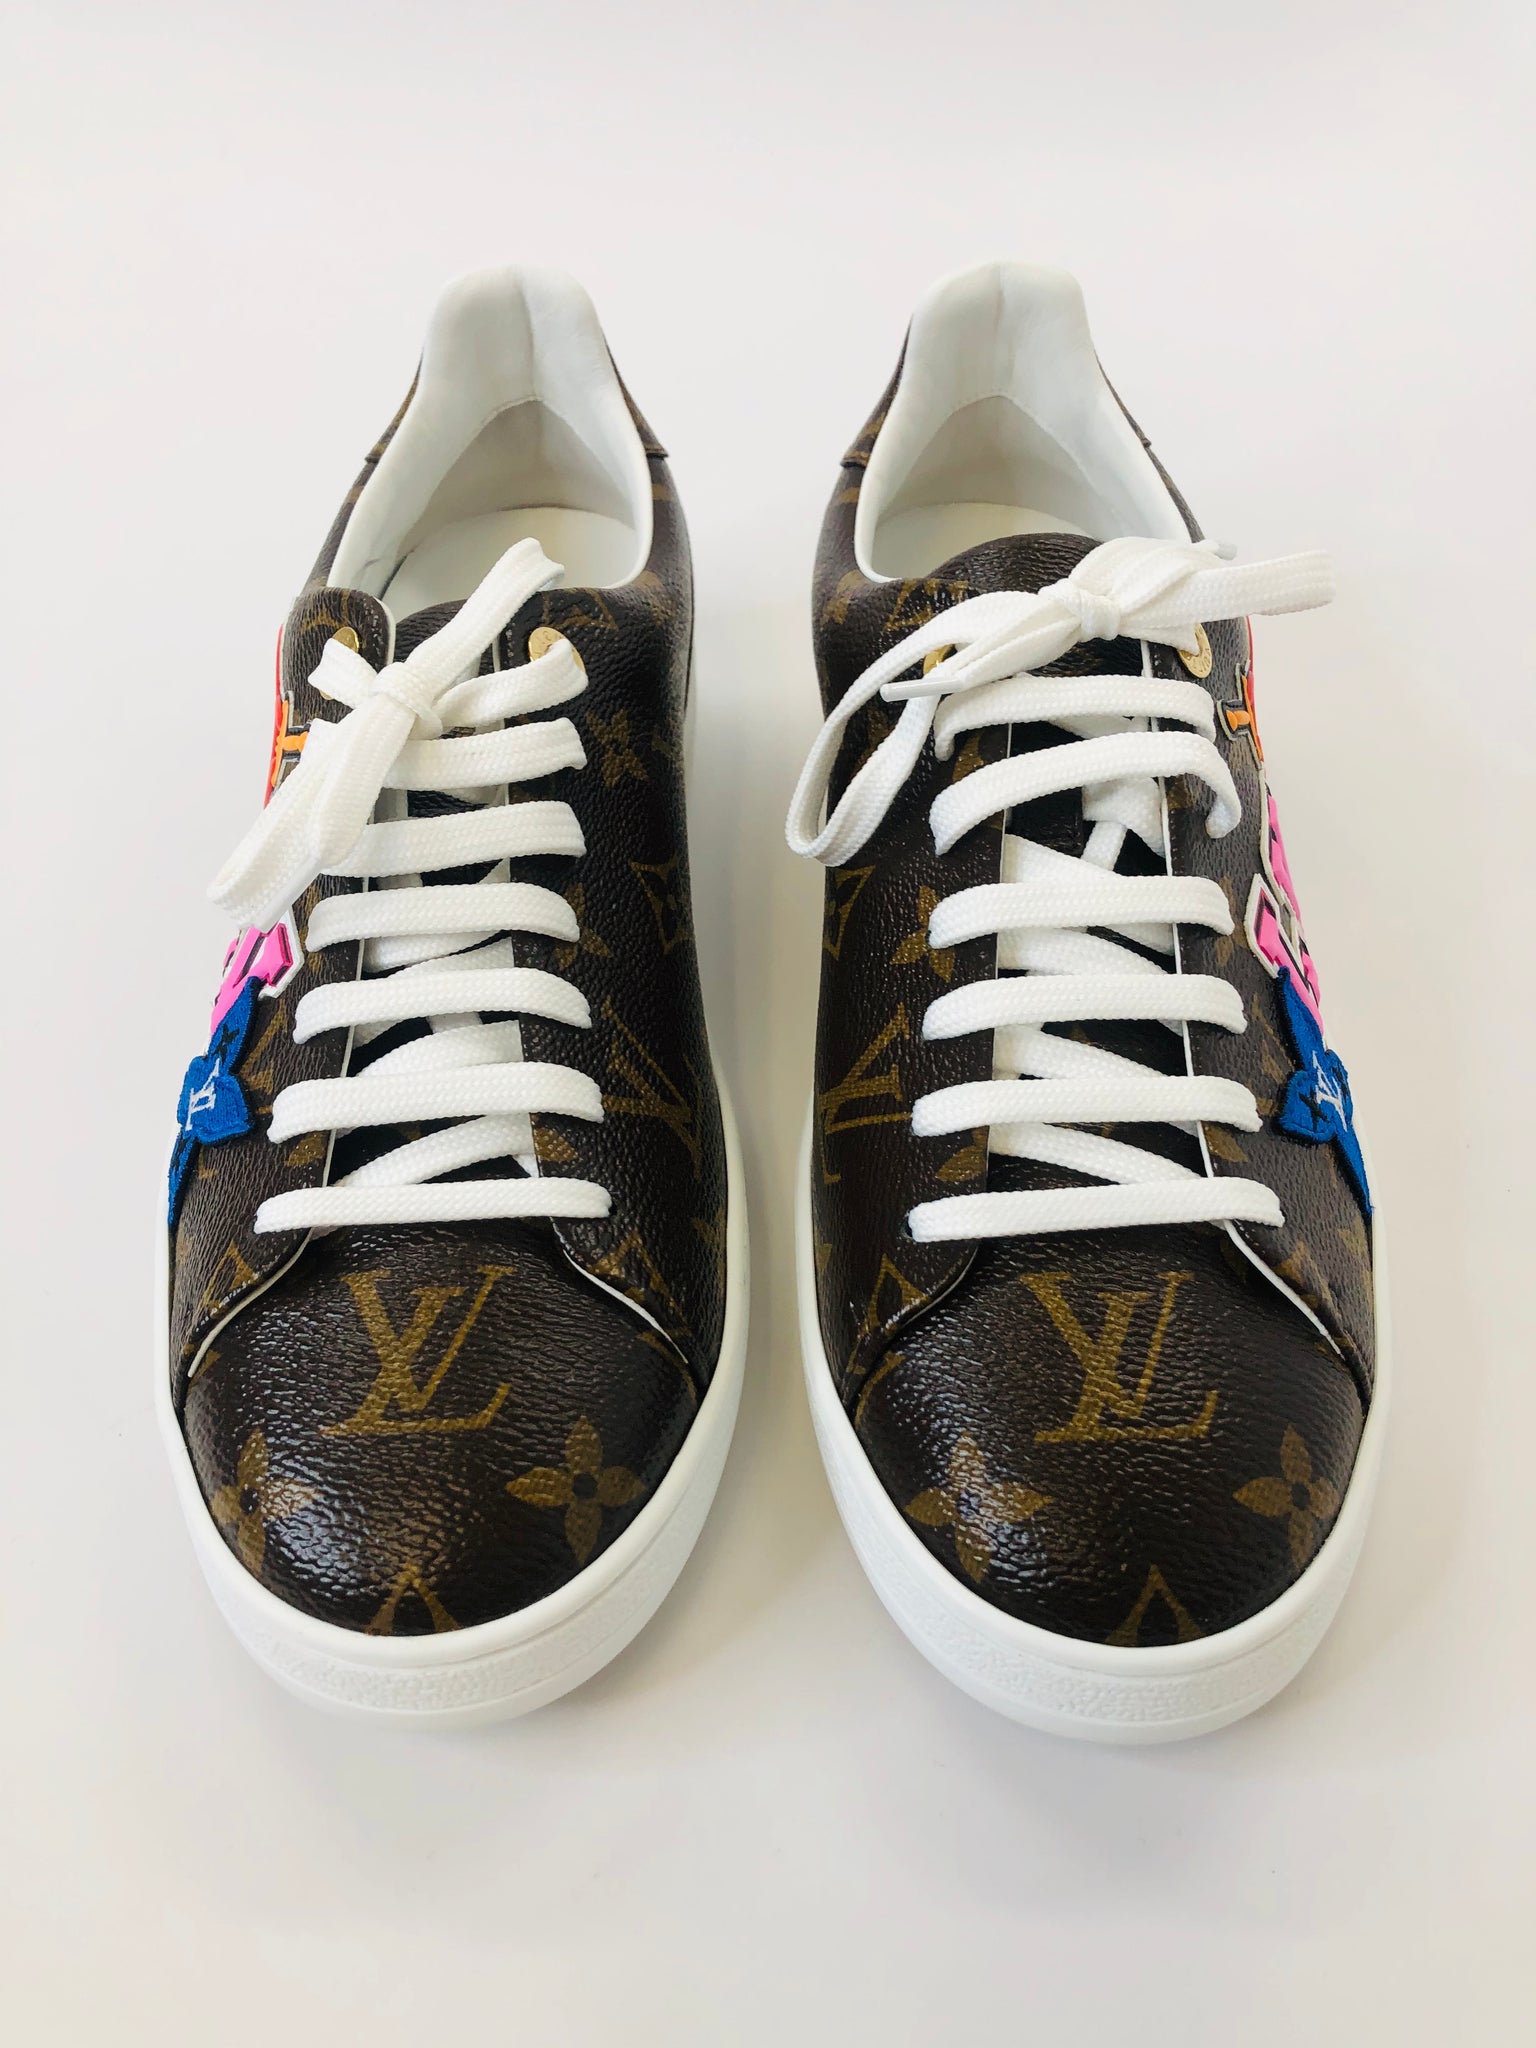 Louis Vuitton, Shoes, Louis Vuitton Black Gold Sneakers